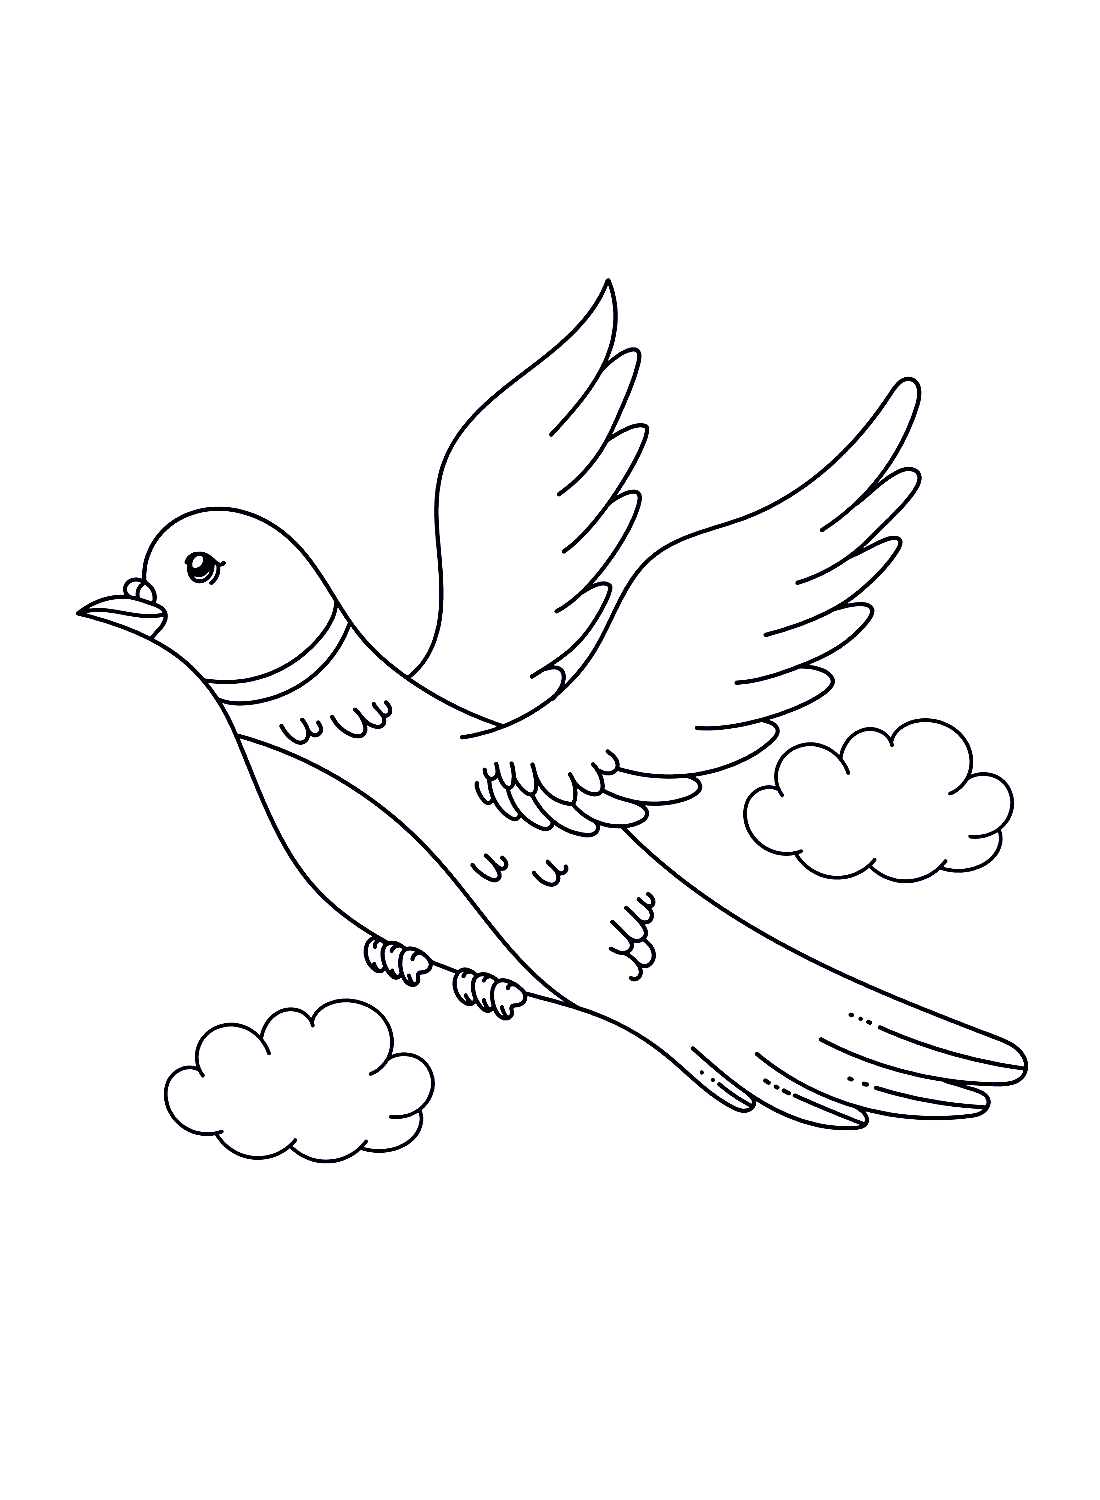 Une colombe volante de Doves